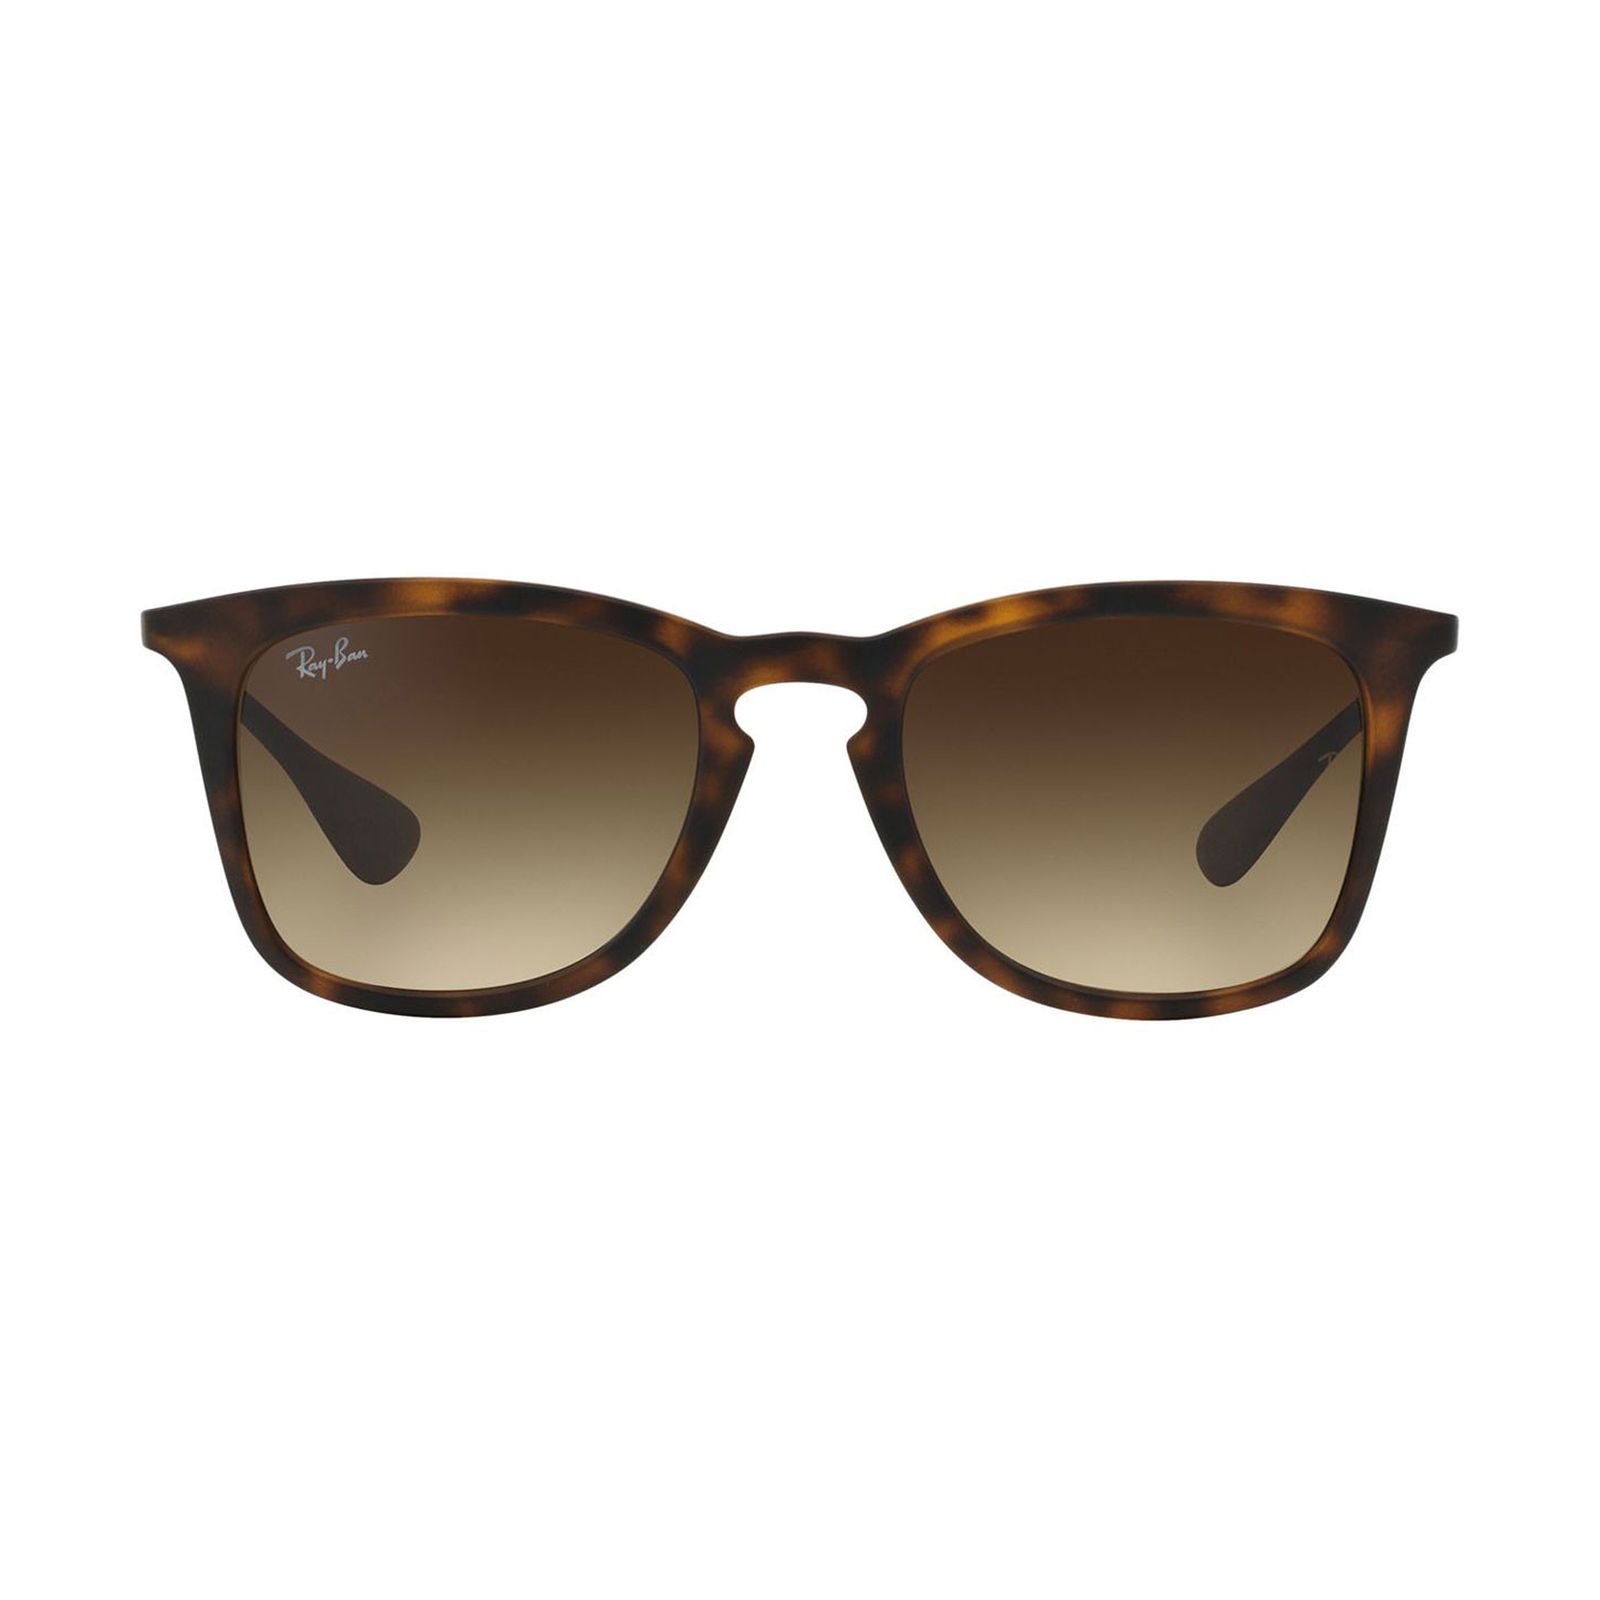 عینک آفتابی ری بن مدل 4221-865/13 - قهوه ای - 1